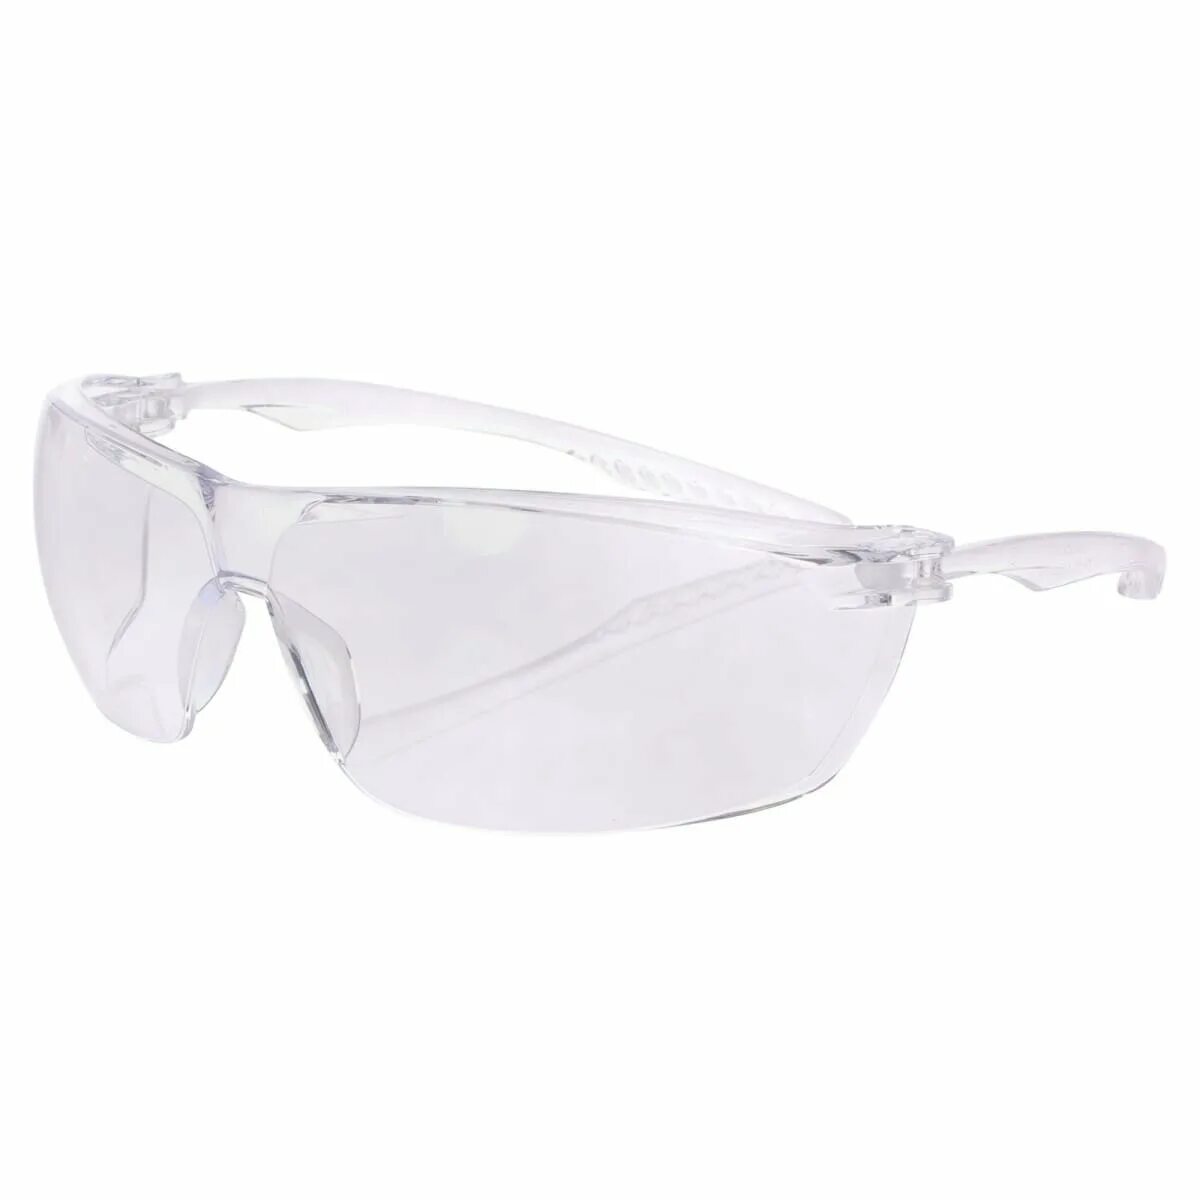 Очки защитные незапотевающие. Очки защитные 96232 стандарт. Защитные очки Леруа Мерлен. Krafter Surgut очки защитные желтый. Очки защитные Krafter 2, 2-1,2 незапотевающие.